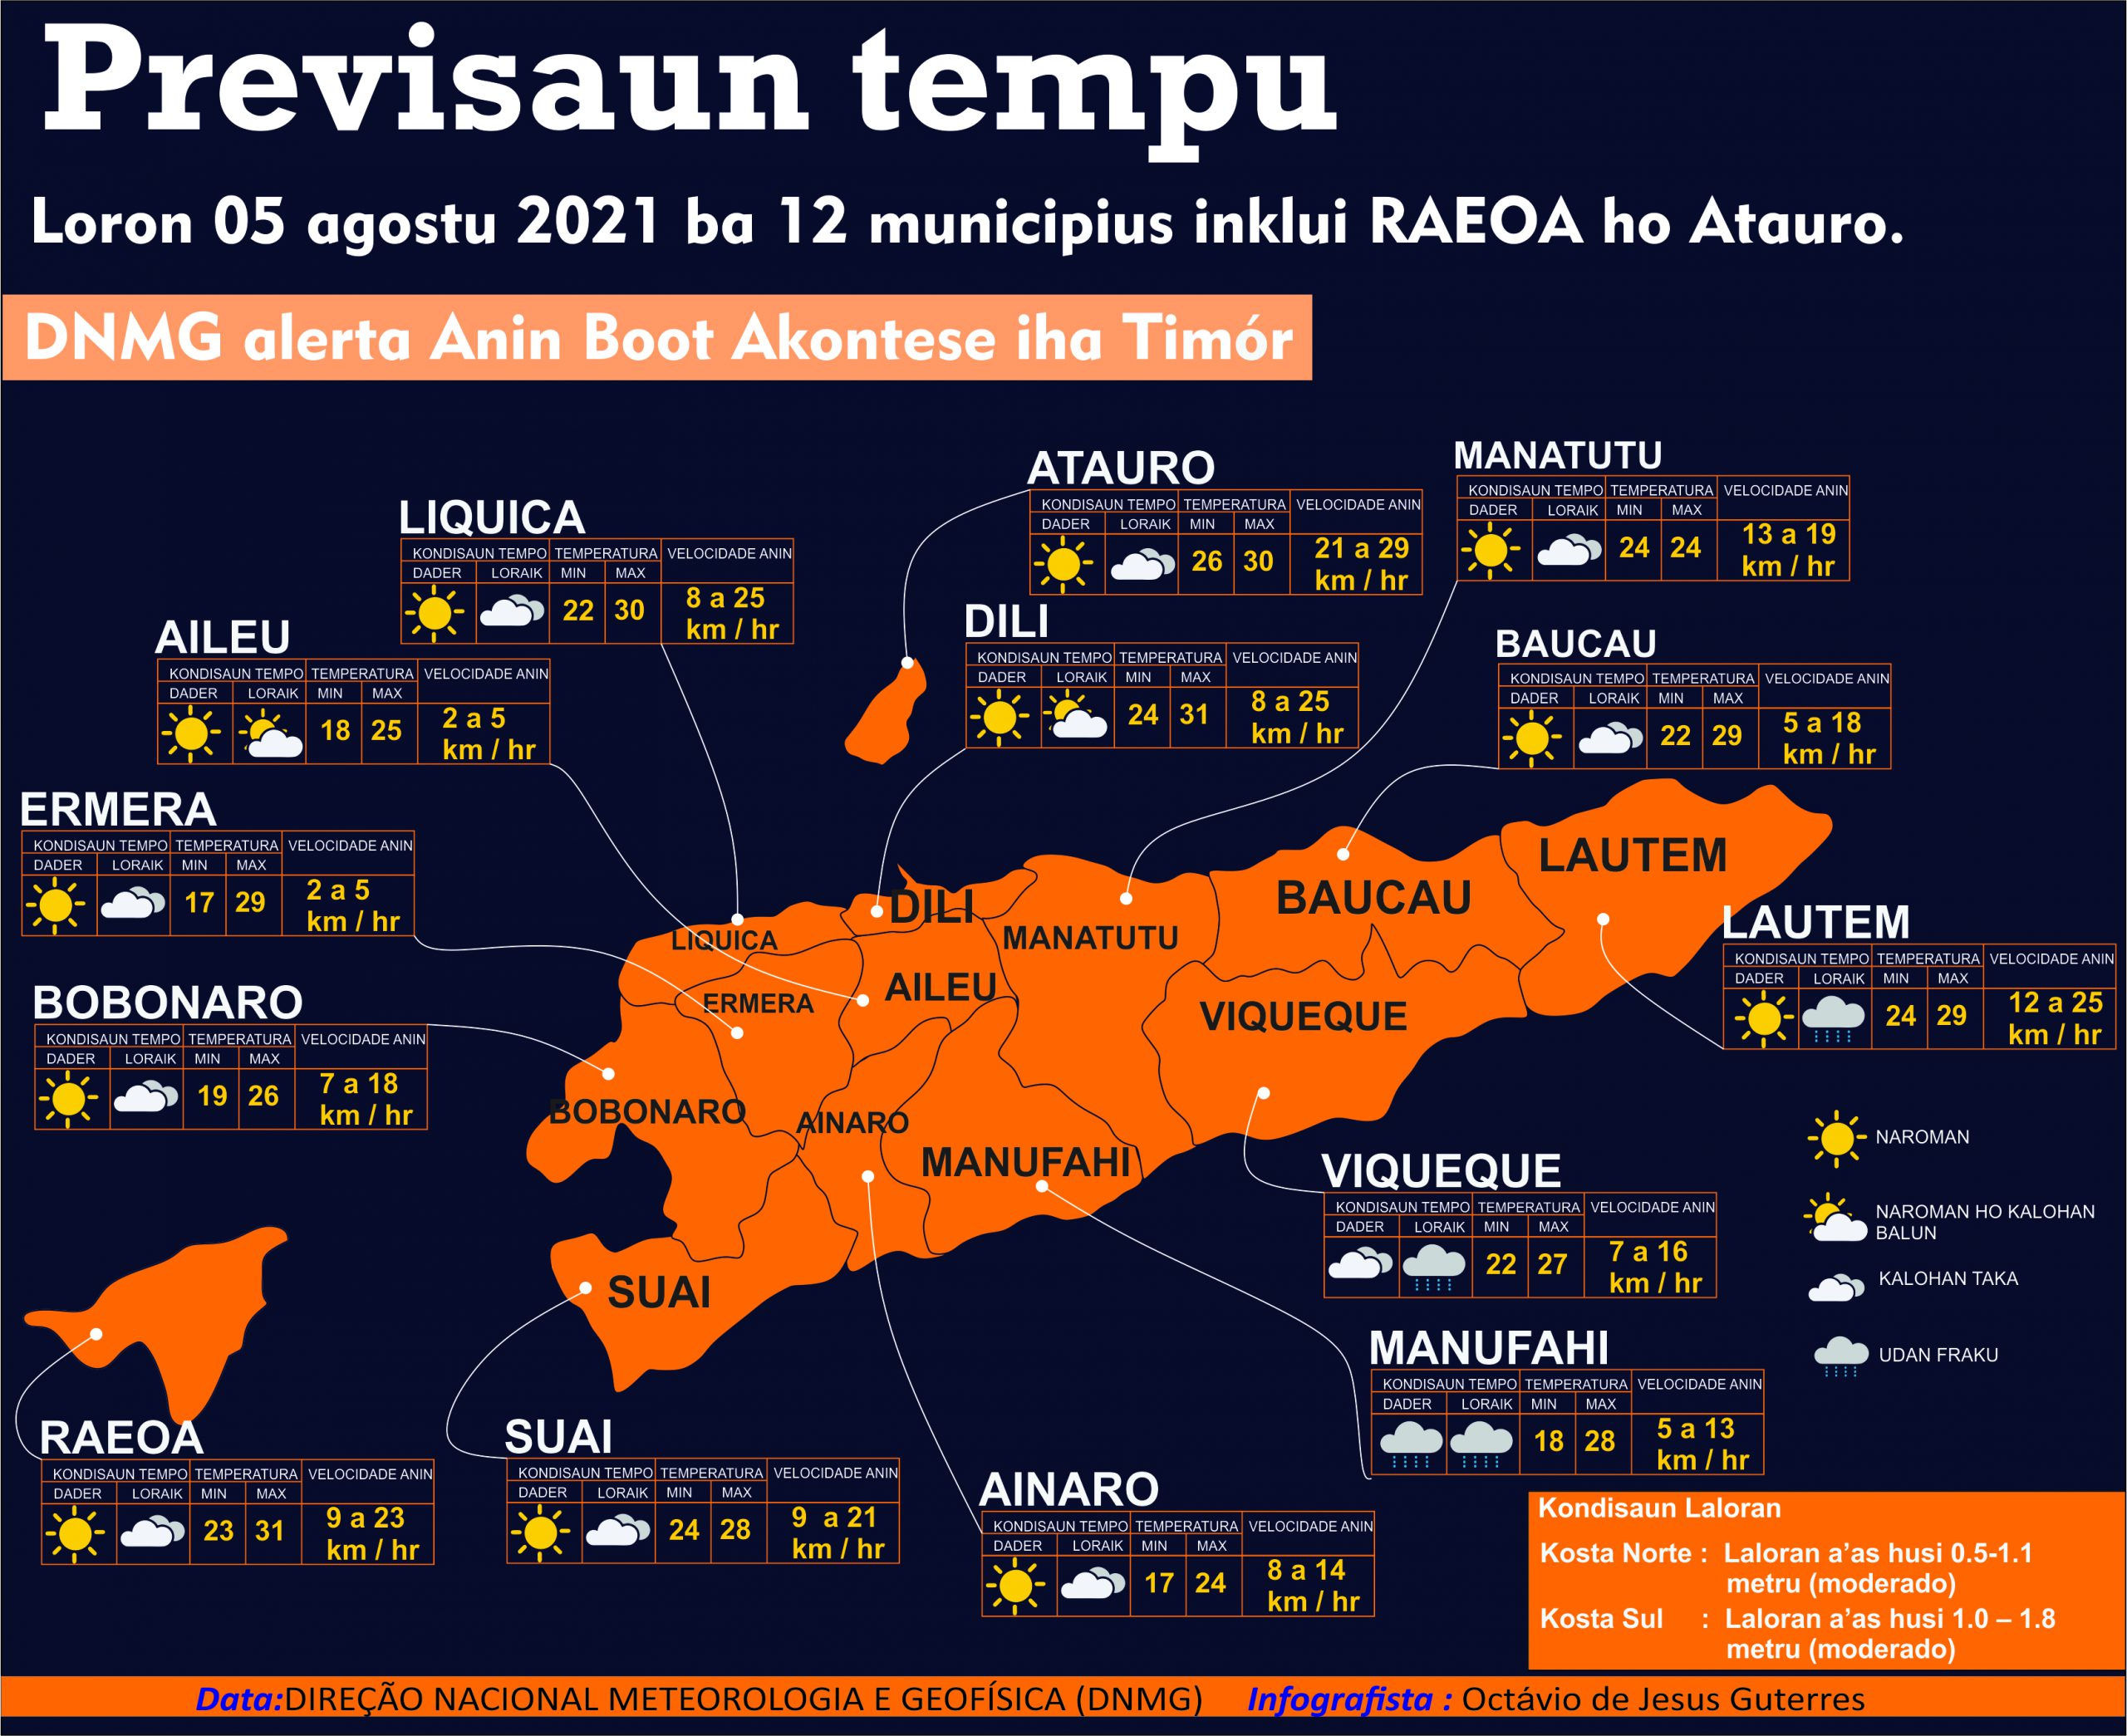 Infografia: Previsaun tempu, 05 agostu 2021